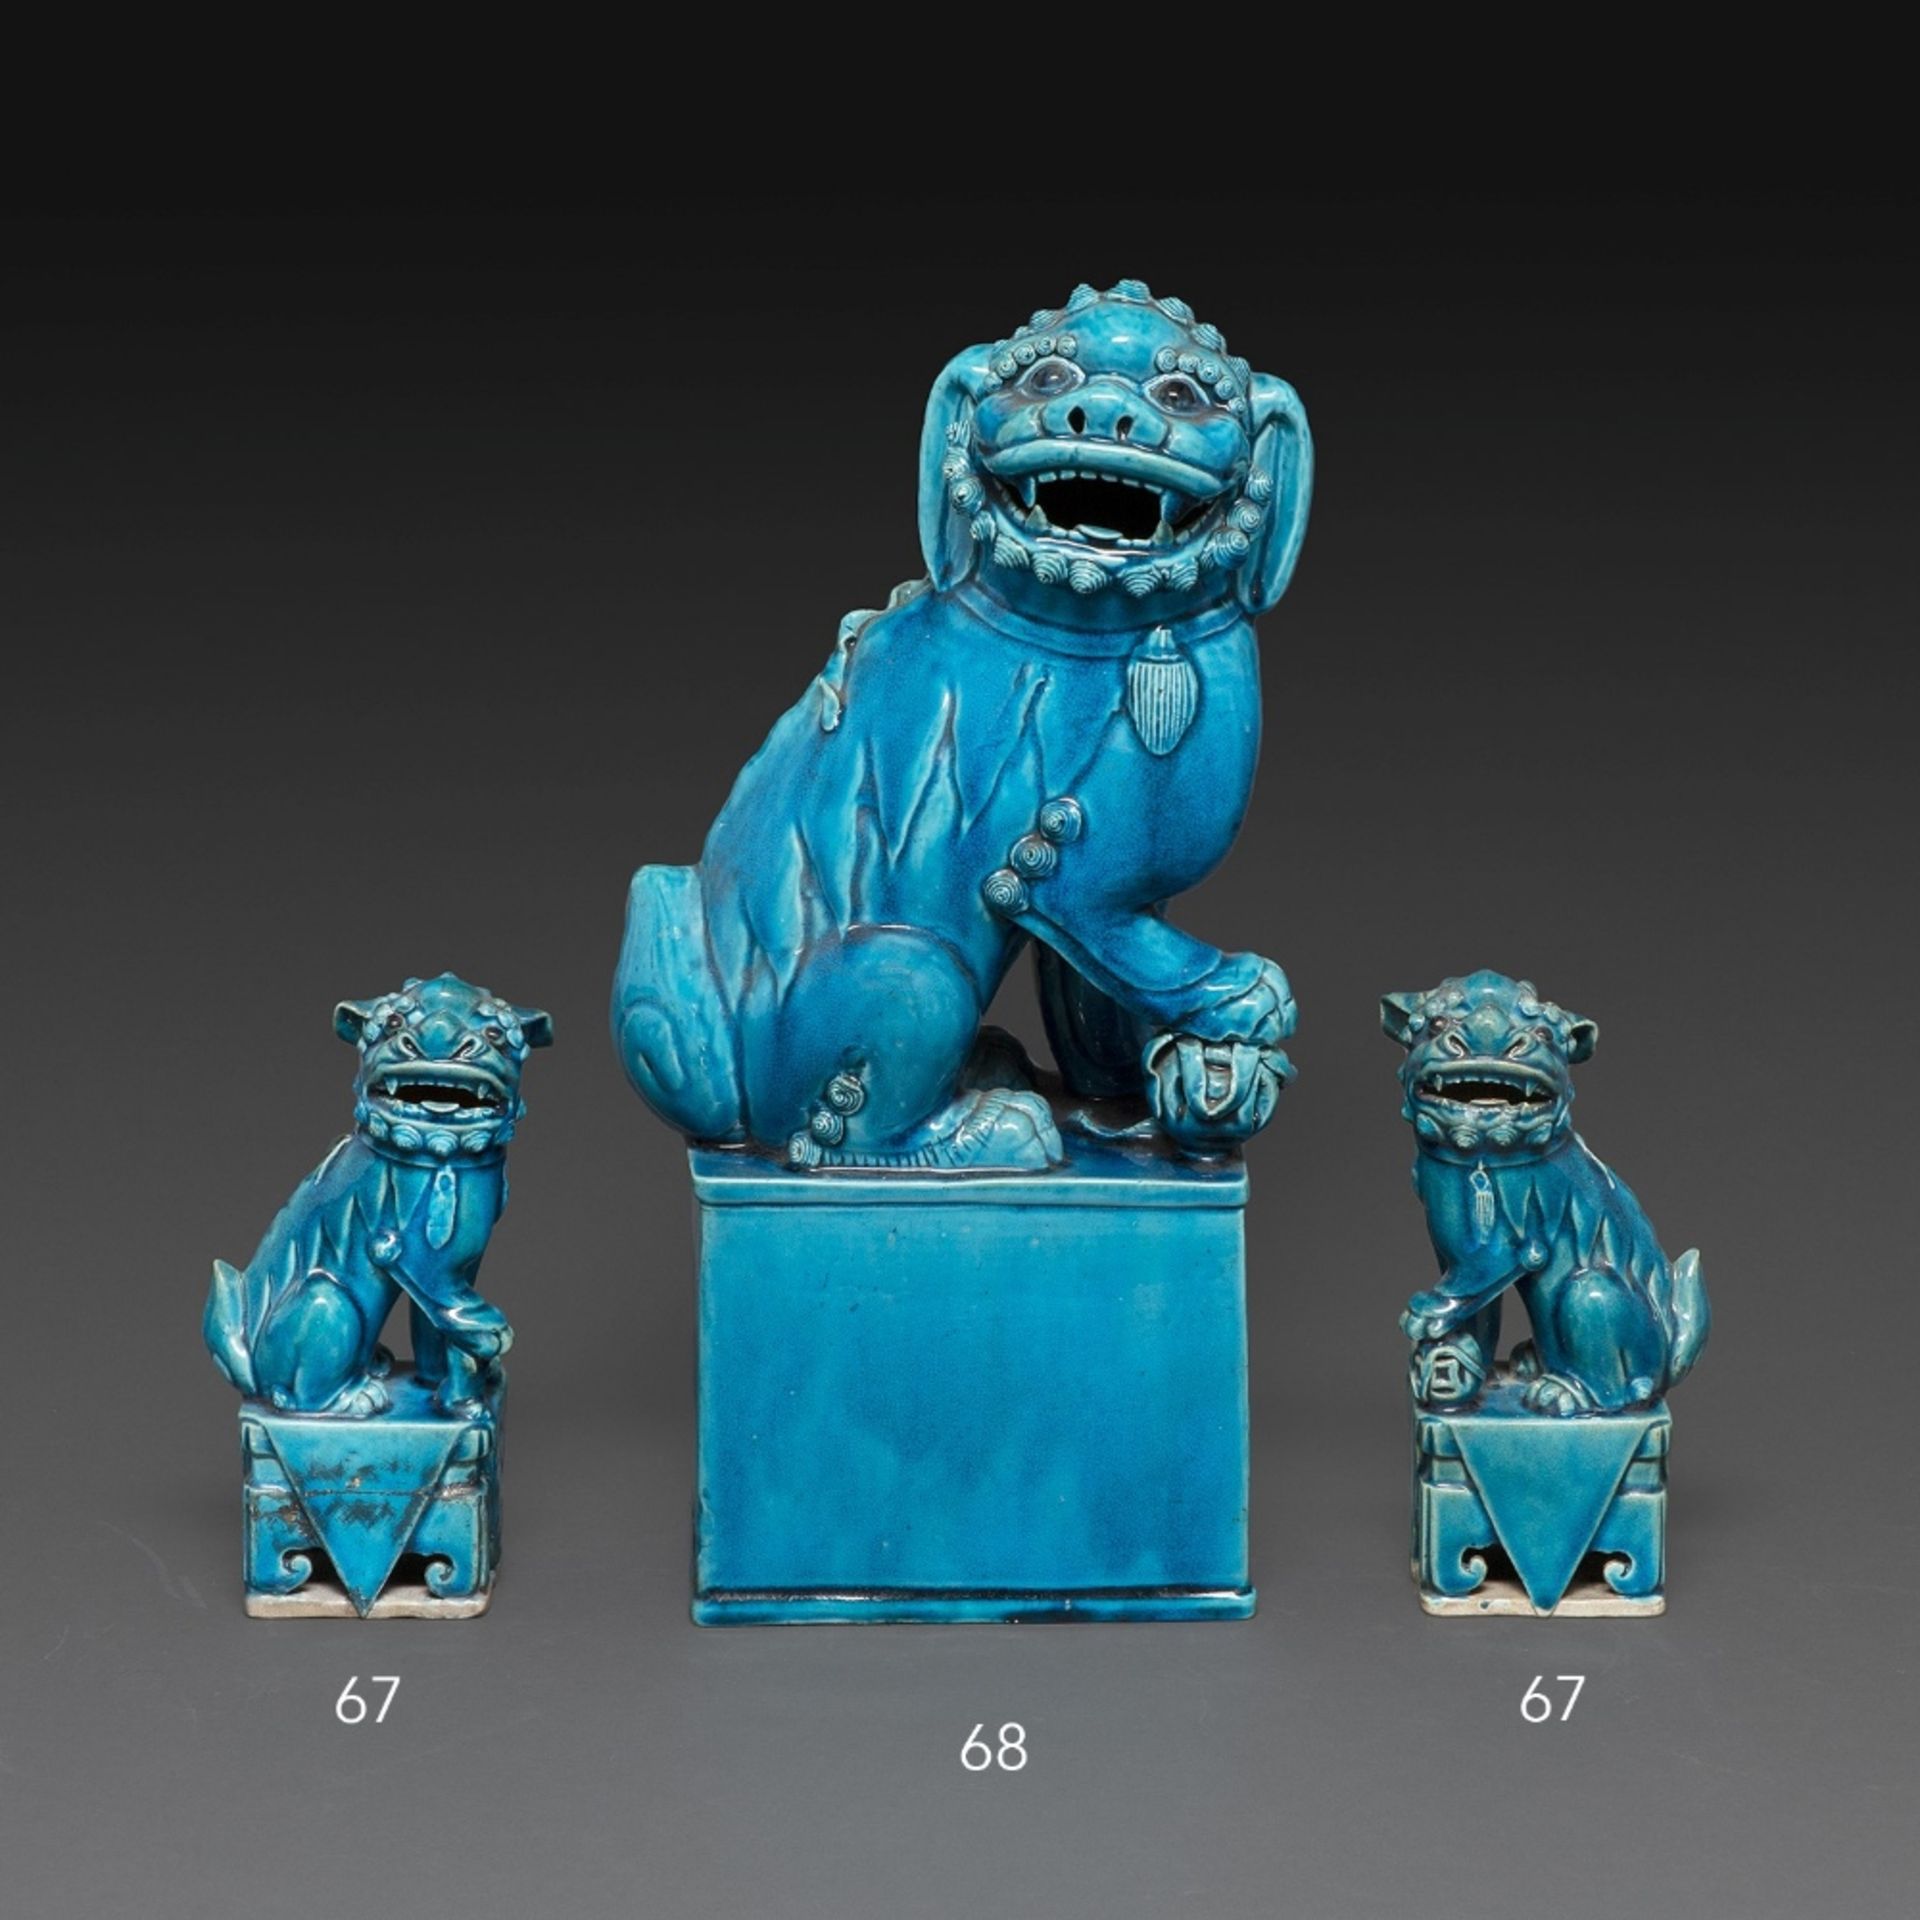 PAIRE DE LIONS BOUDDIQUES en biscuit émaillé bleu turquoise, représentés assis sur un socle ajouré